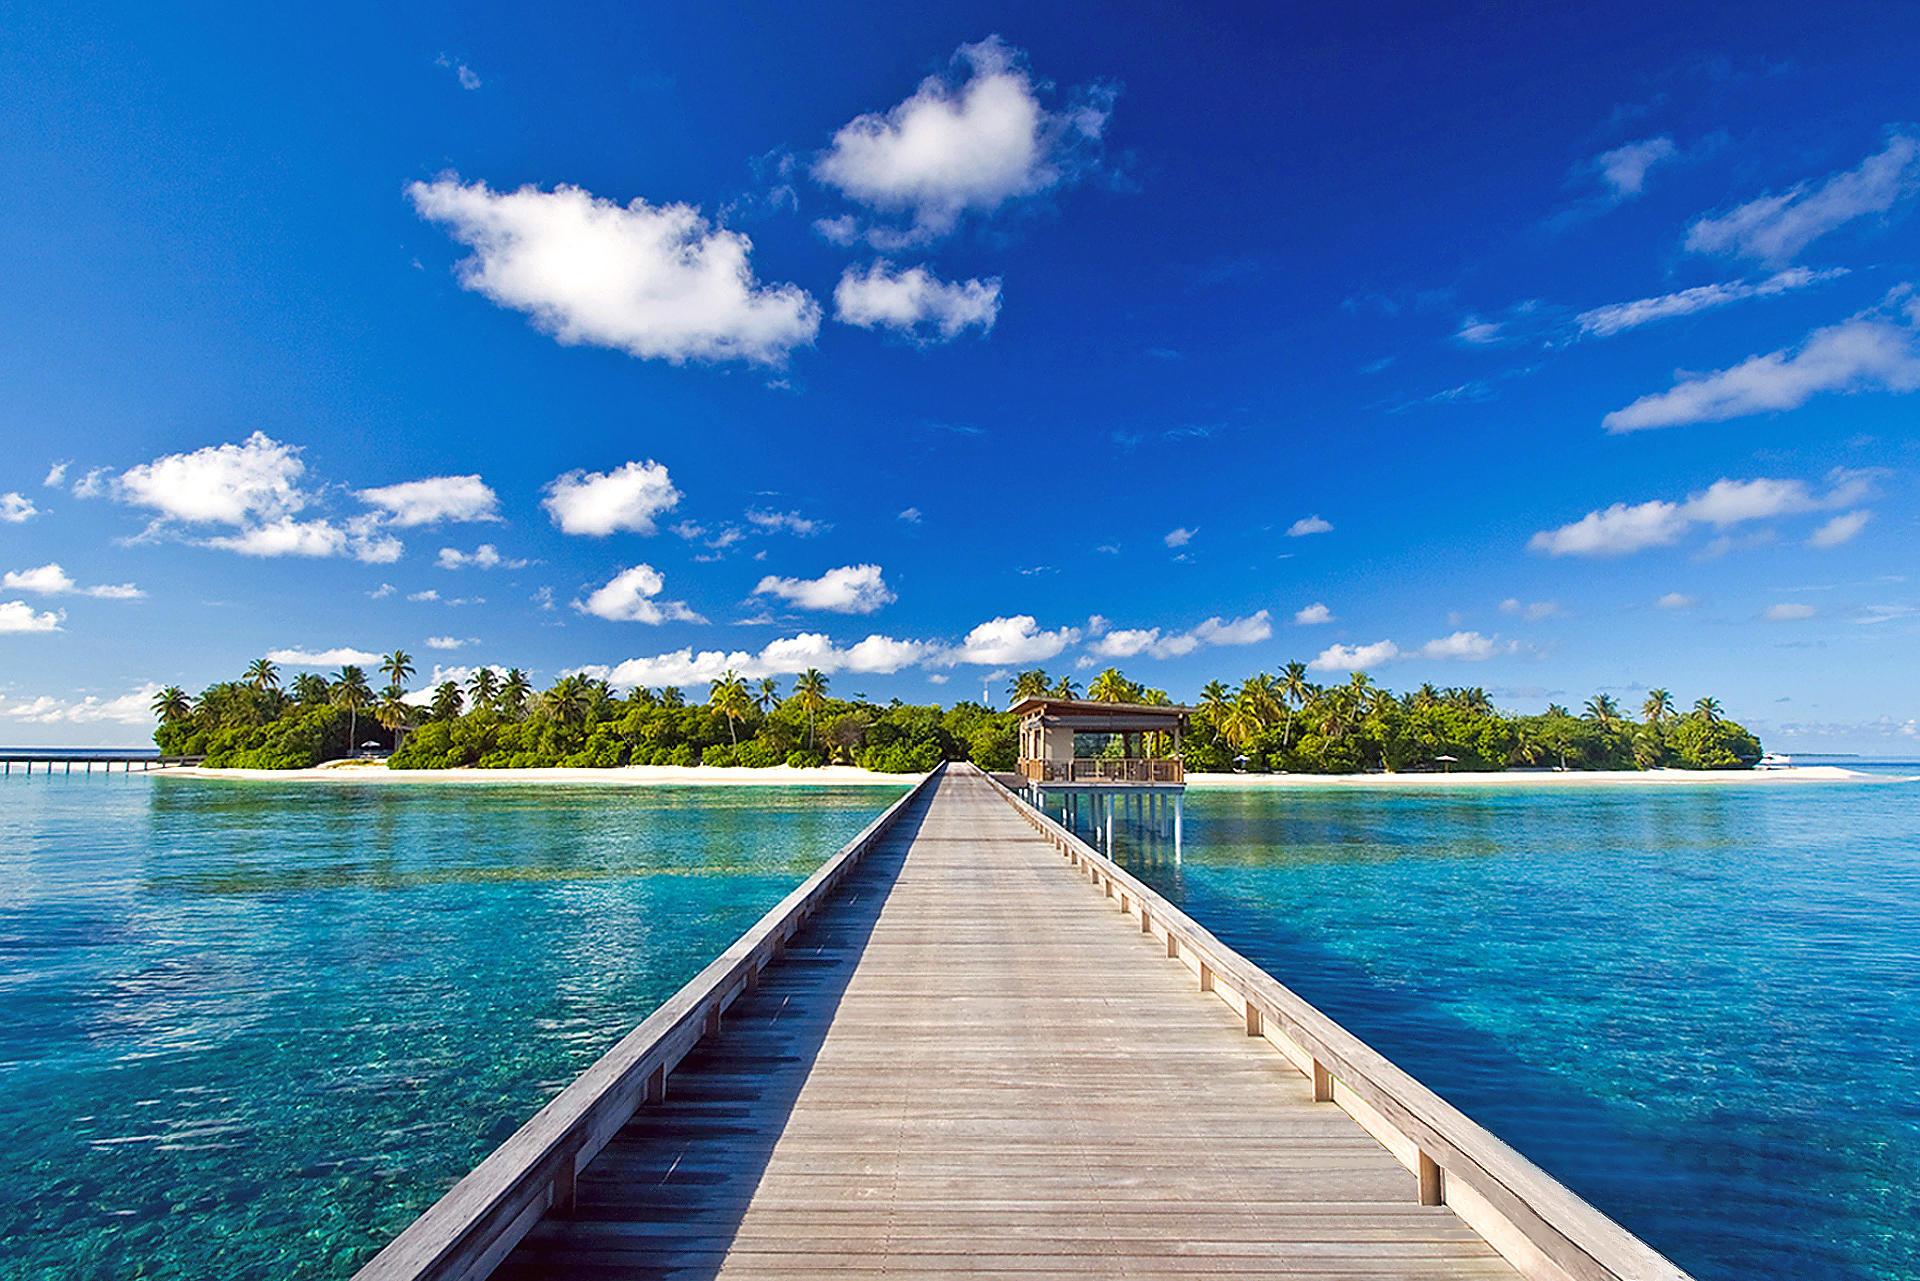 Мальдивы пейзаж